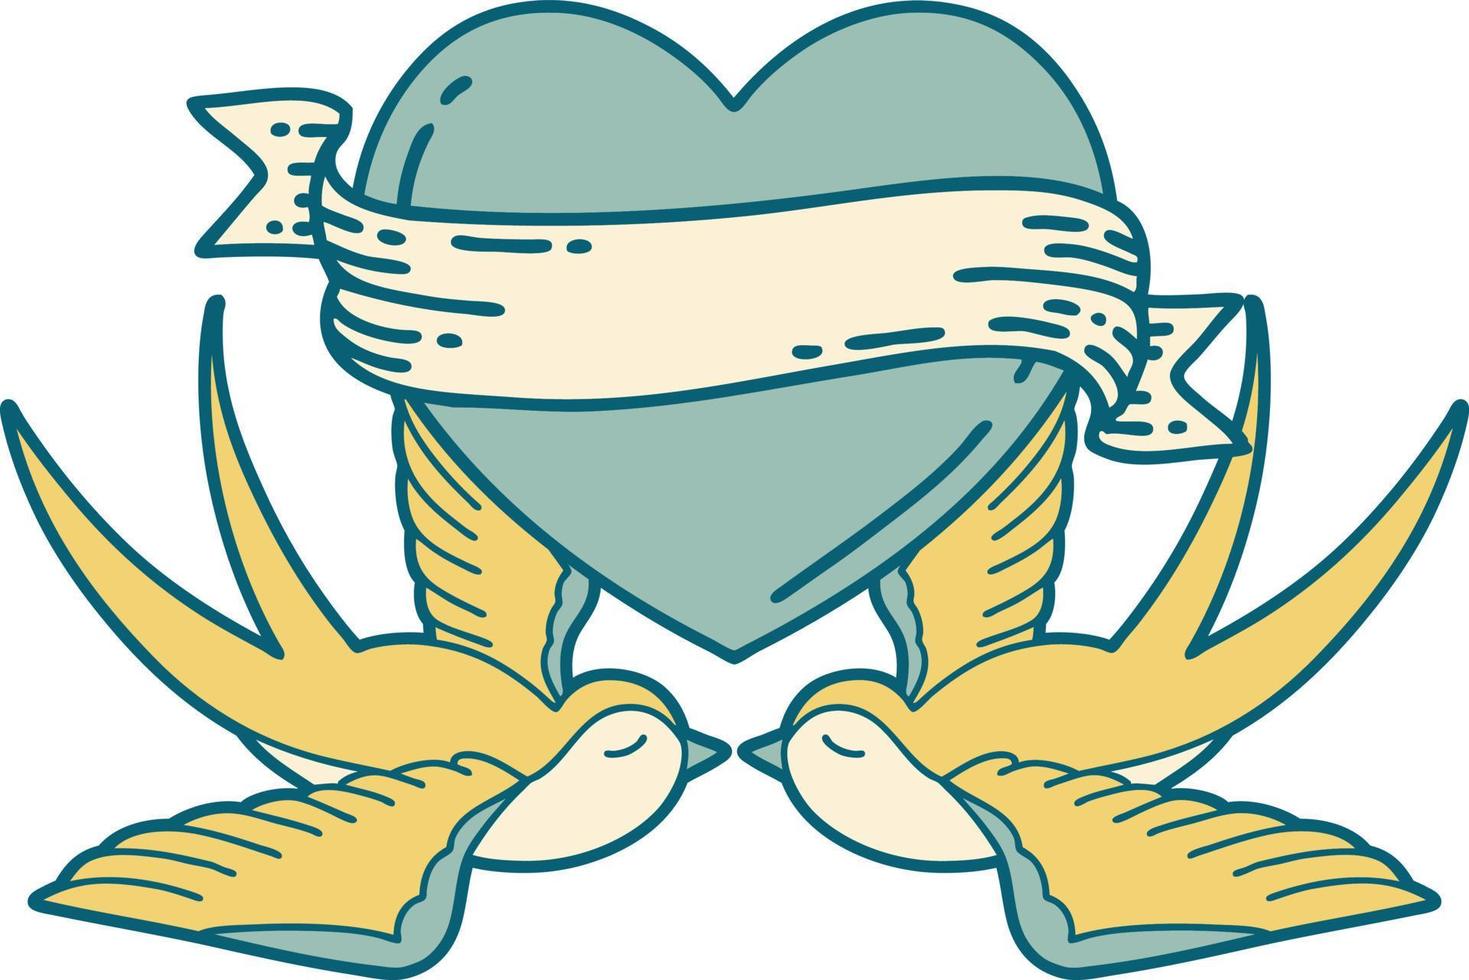 ikonisches Bild im Tattoo-Stil von Schwalben und einem Herzen mit Banner vektor